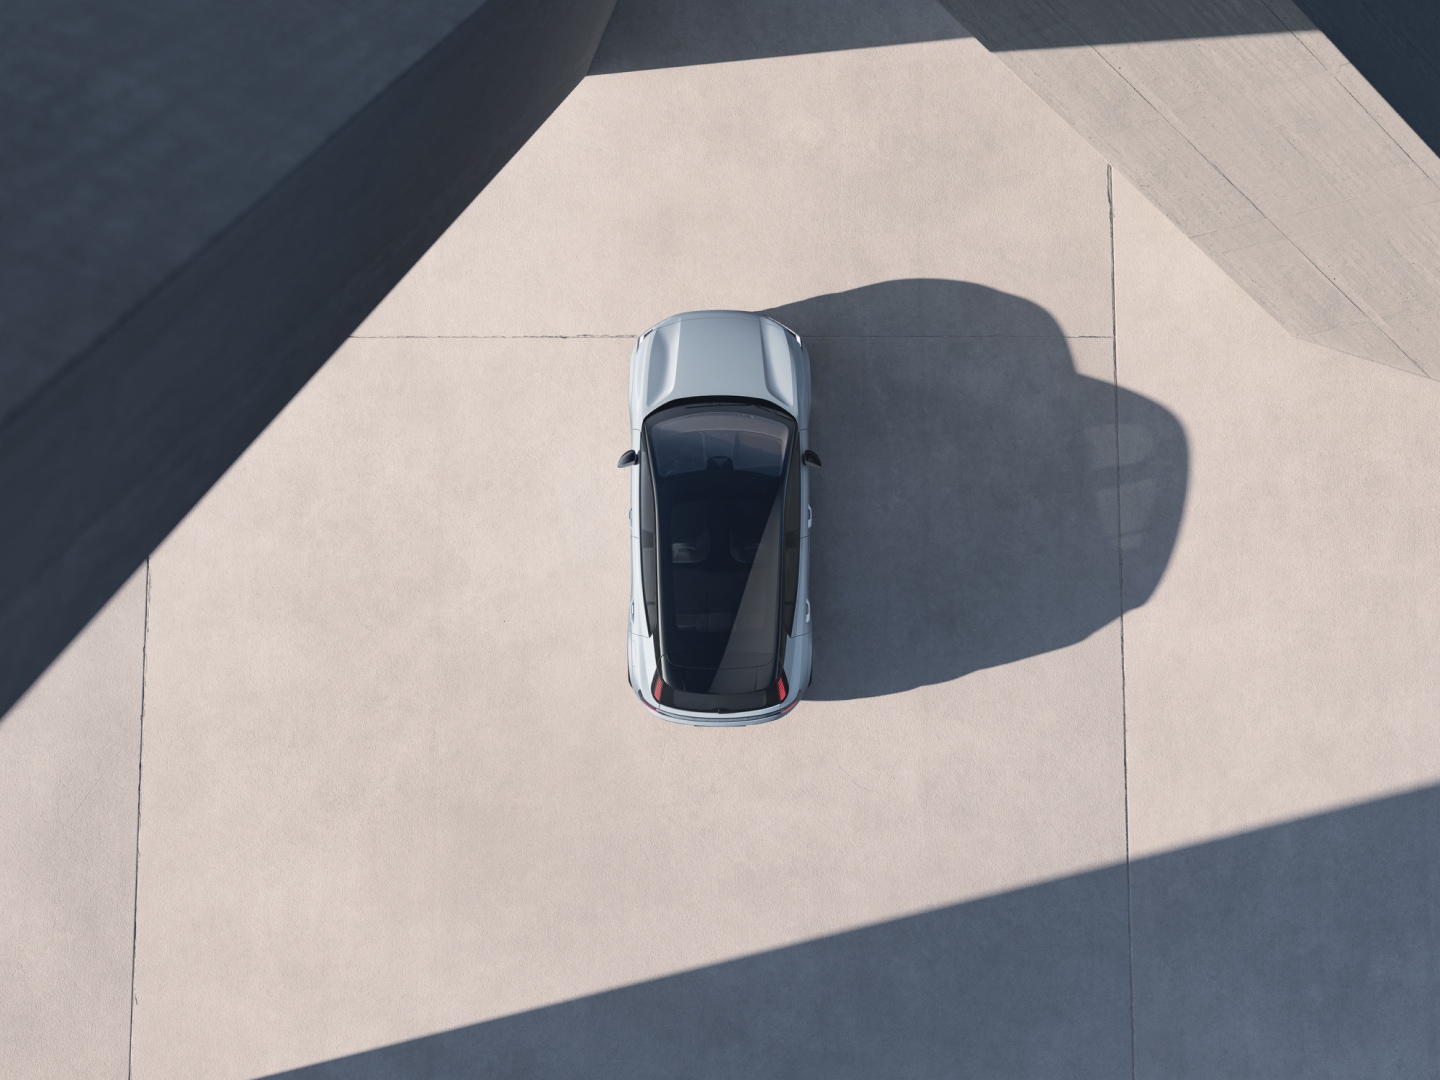 Изглед от птичи поглед на Volvo EX30, което е силно осветено отстрани и хвърля дълга сянка.